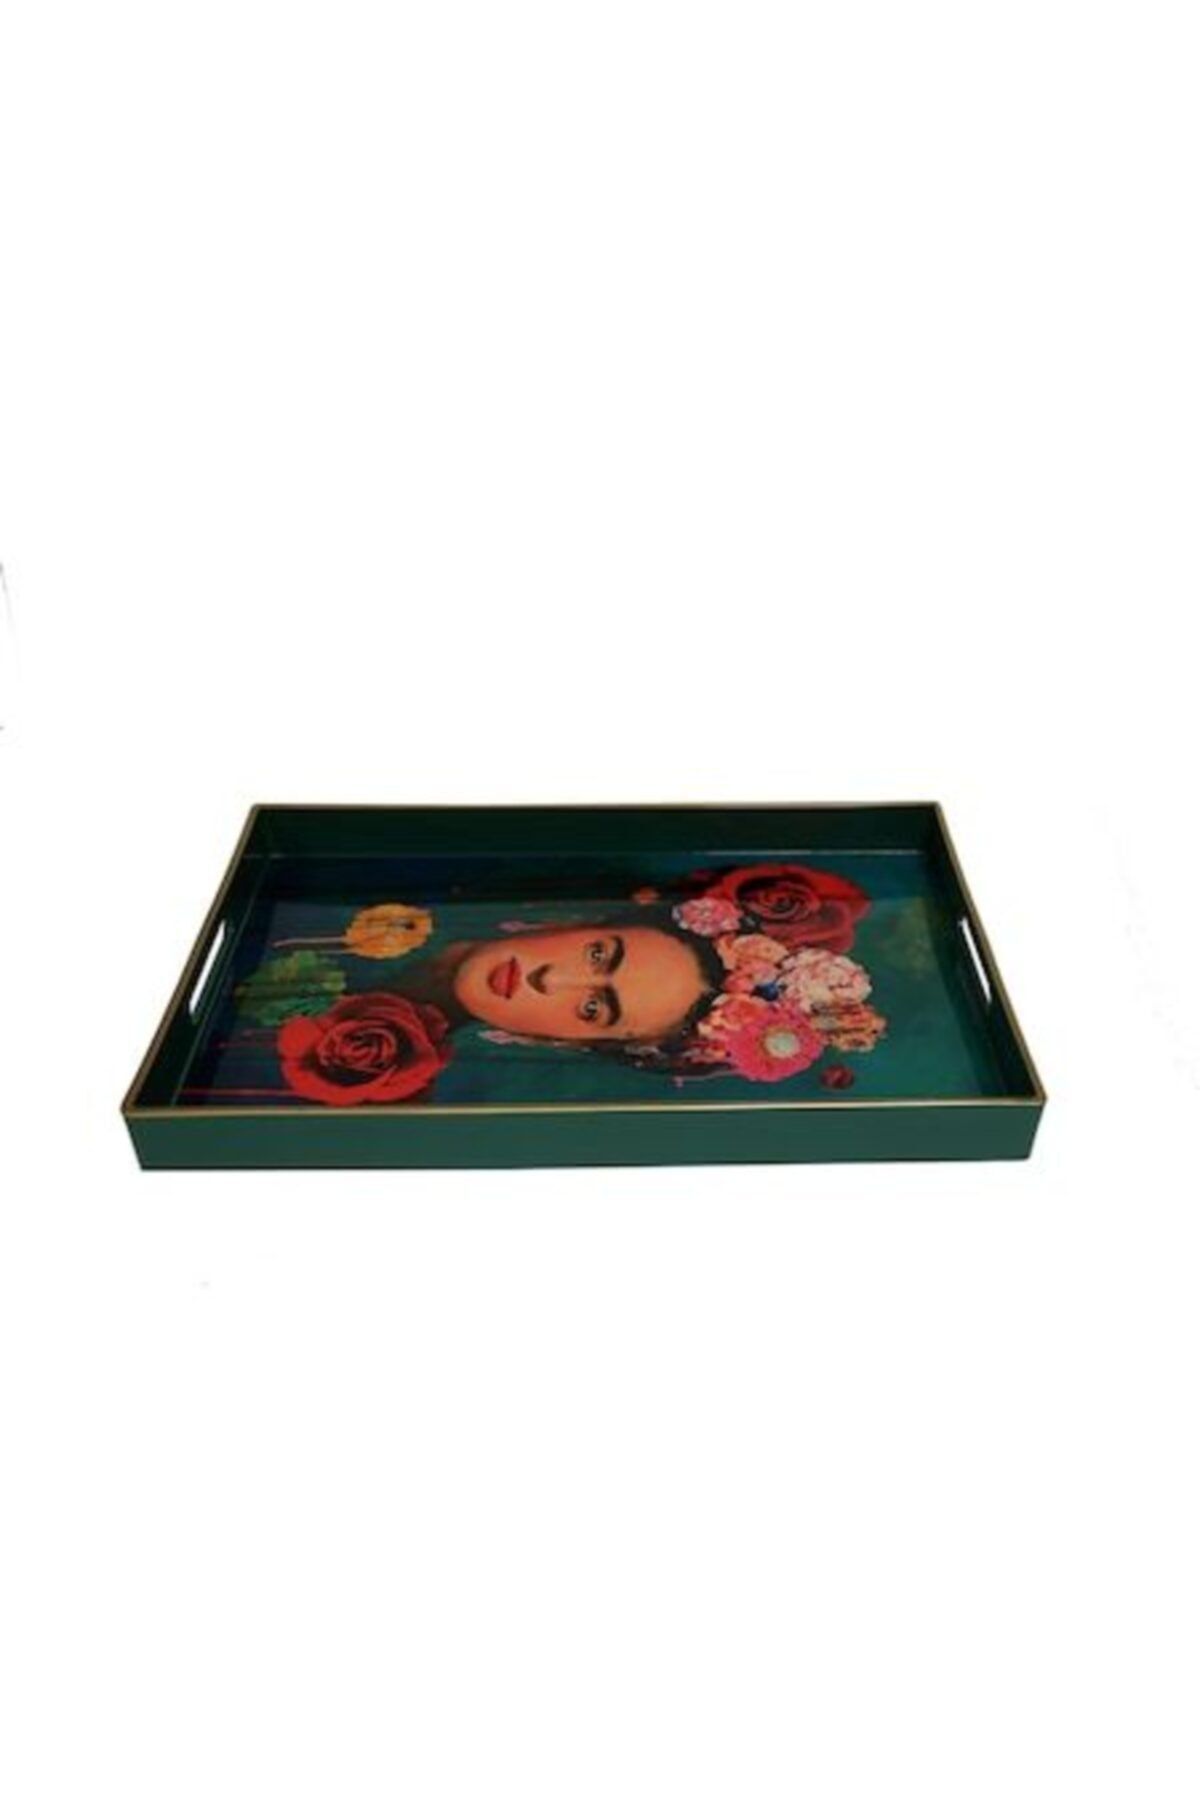 Lucky Art Luckyart Dik Frida Desenli Tepsi 45x31cm Lysp001